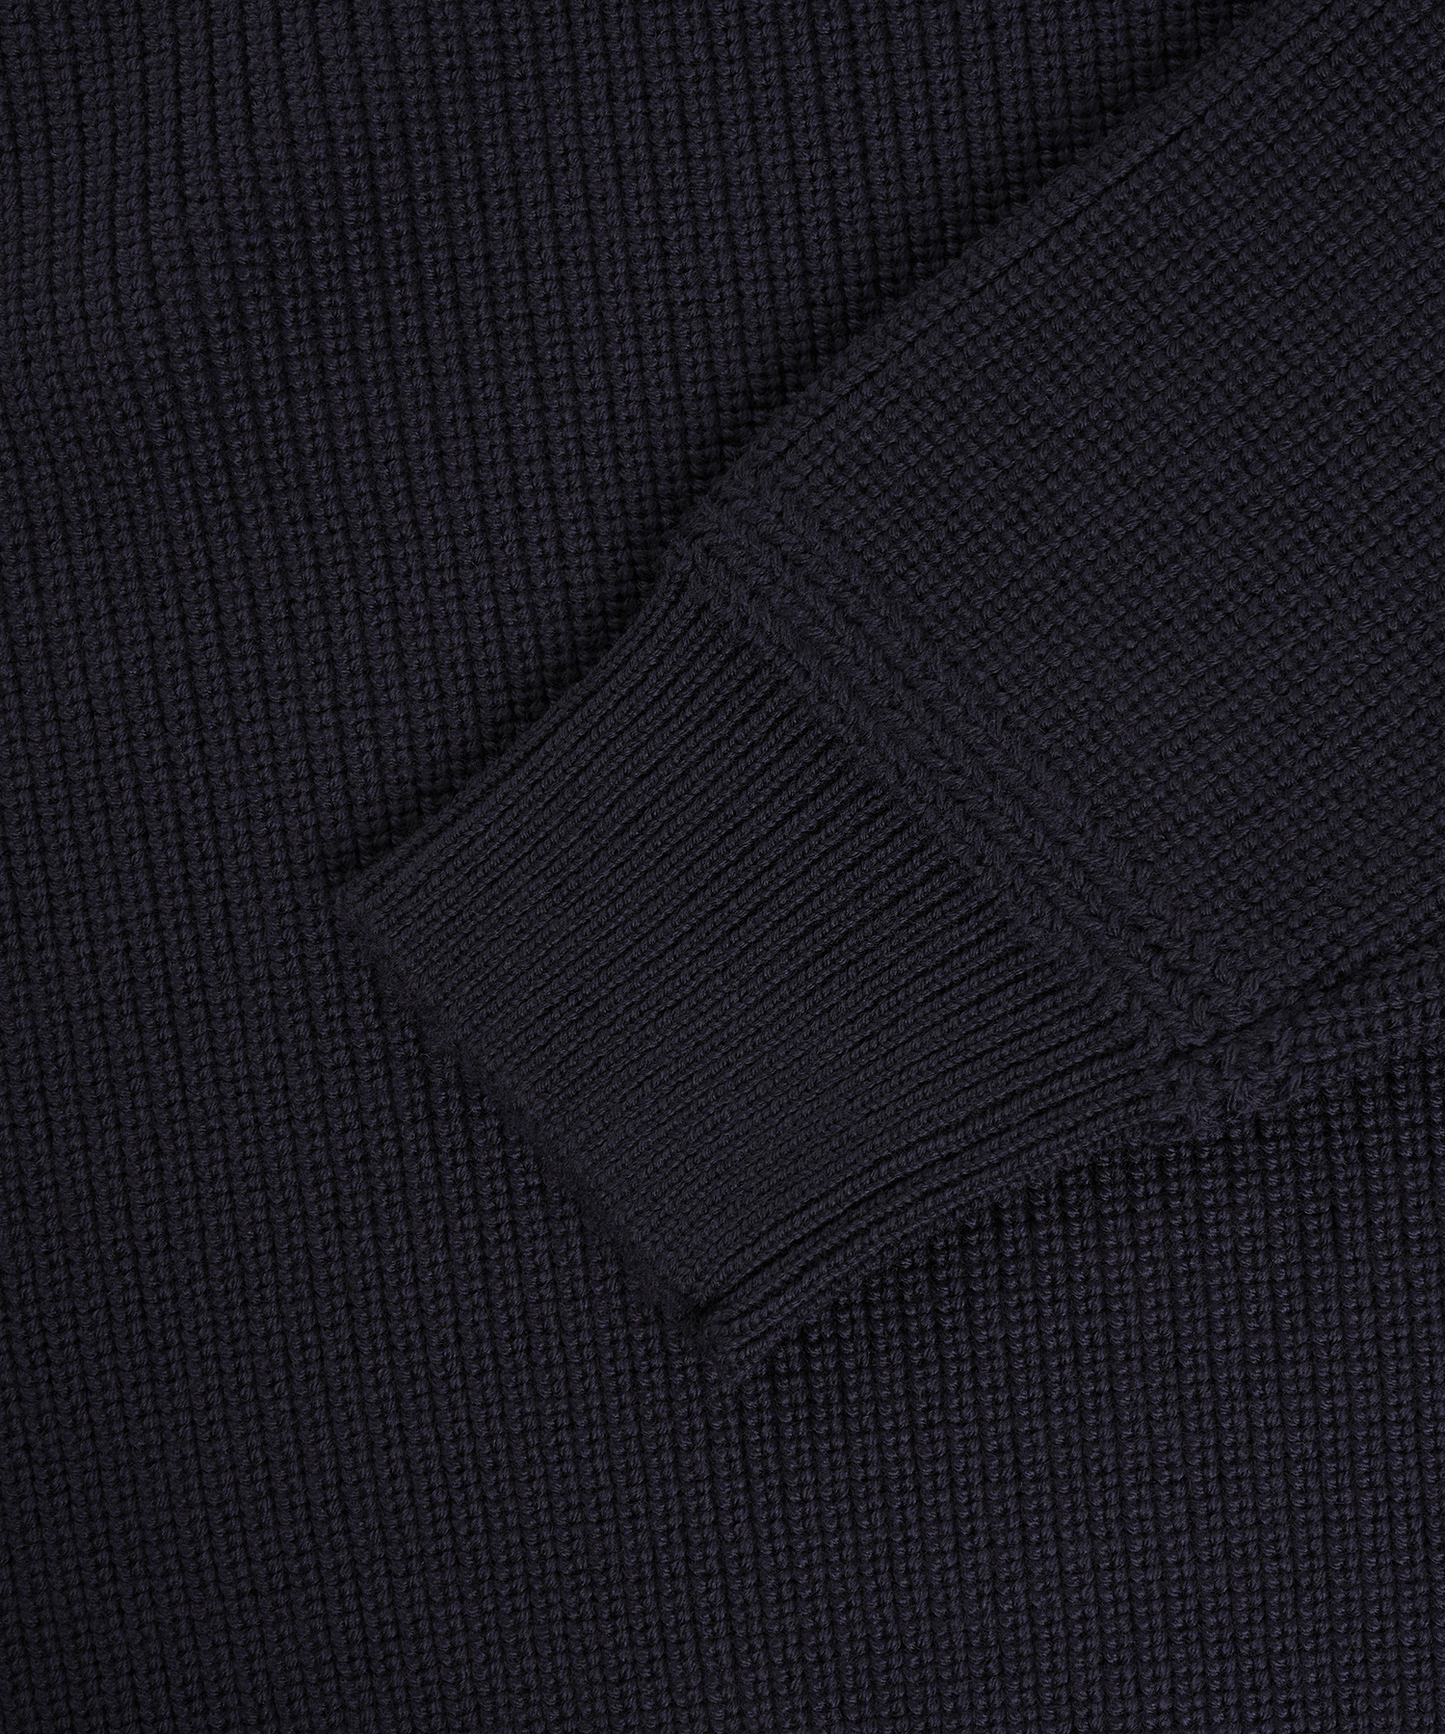 Half-zip trui donkerblauw merinowol